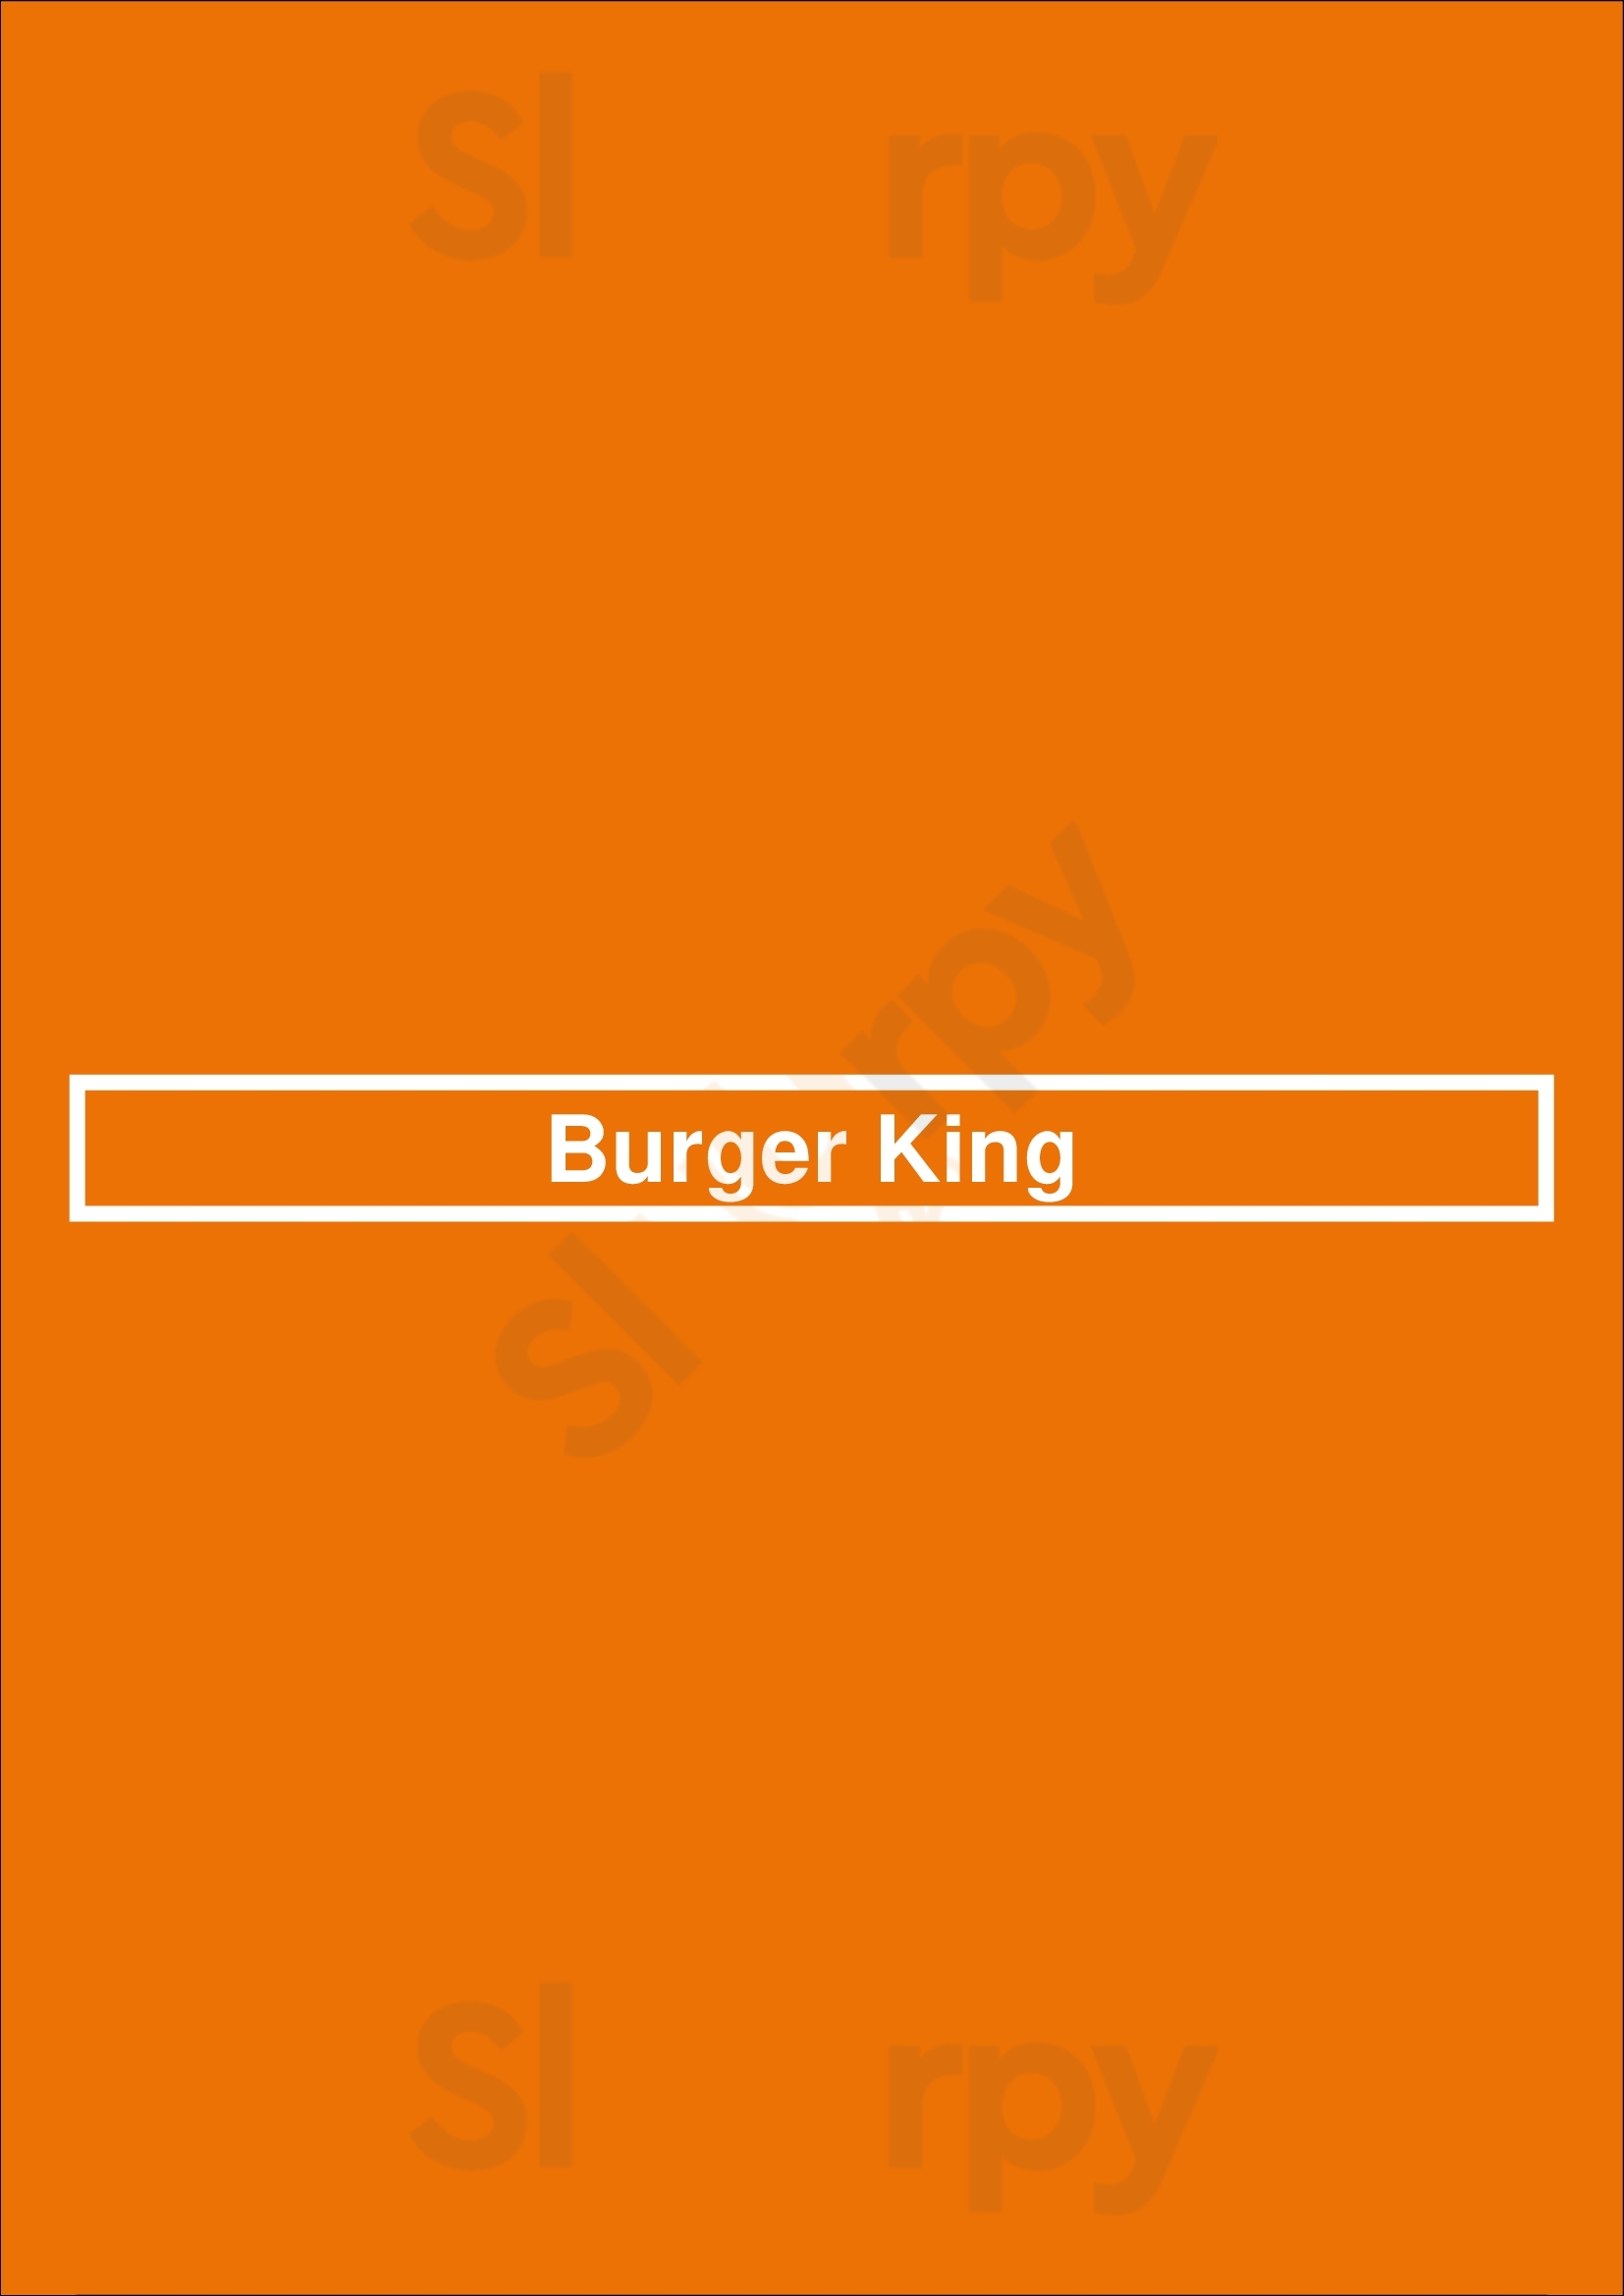 Burger King Lexington Menu - 1